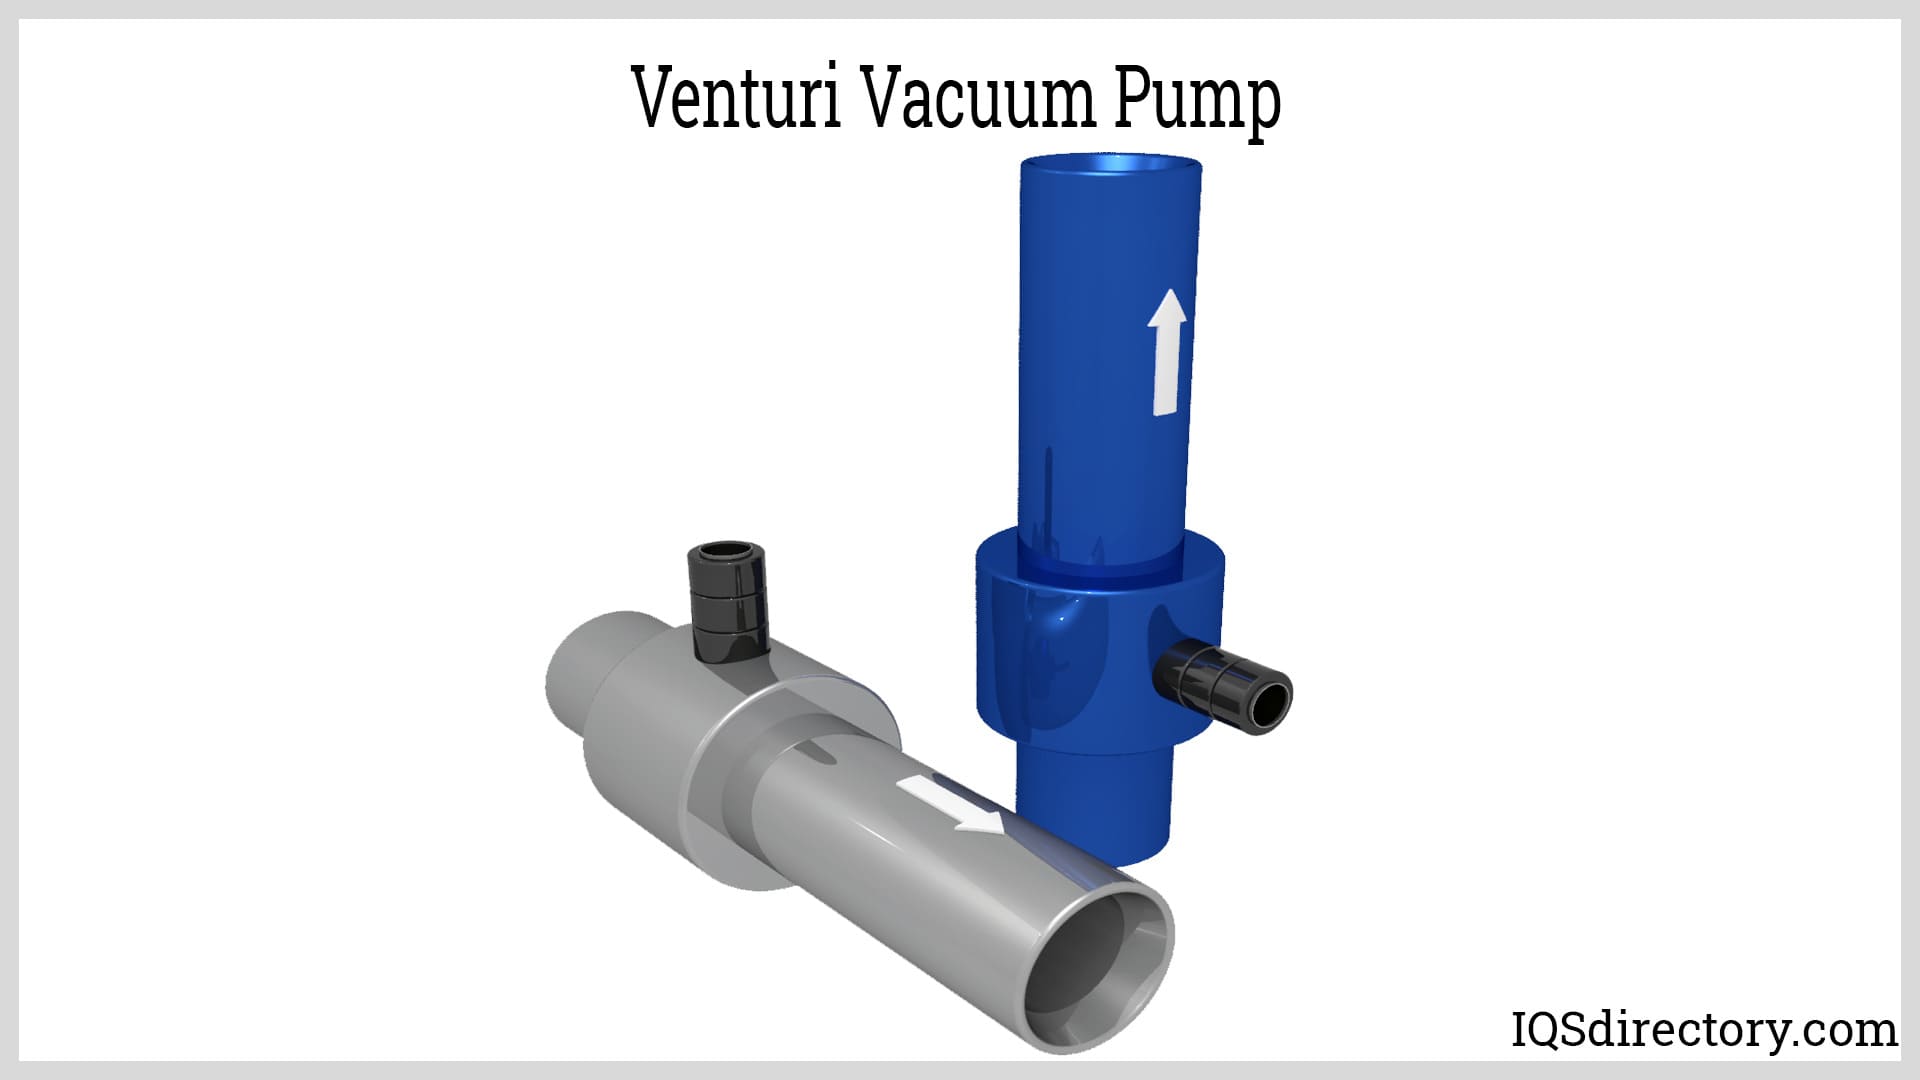 Venturi Vacuum Pump